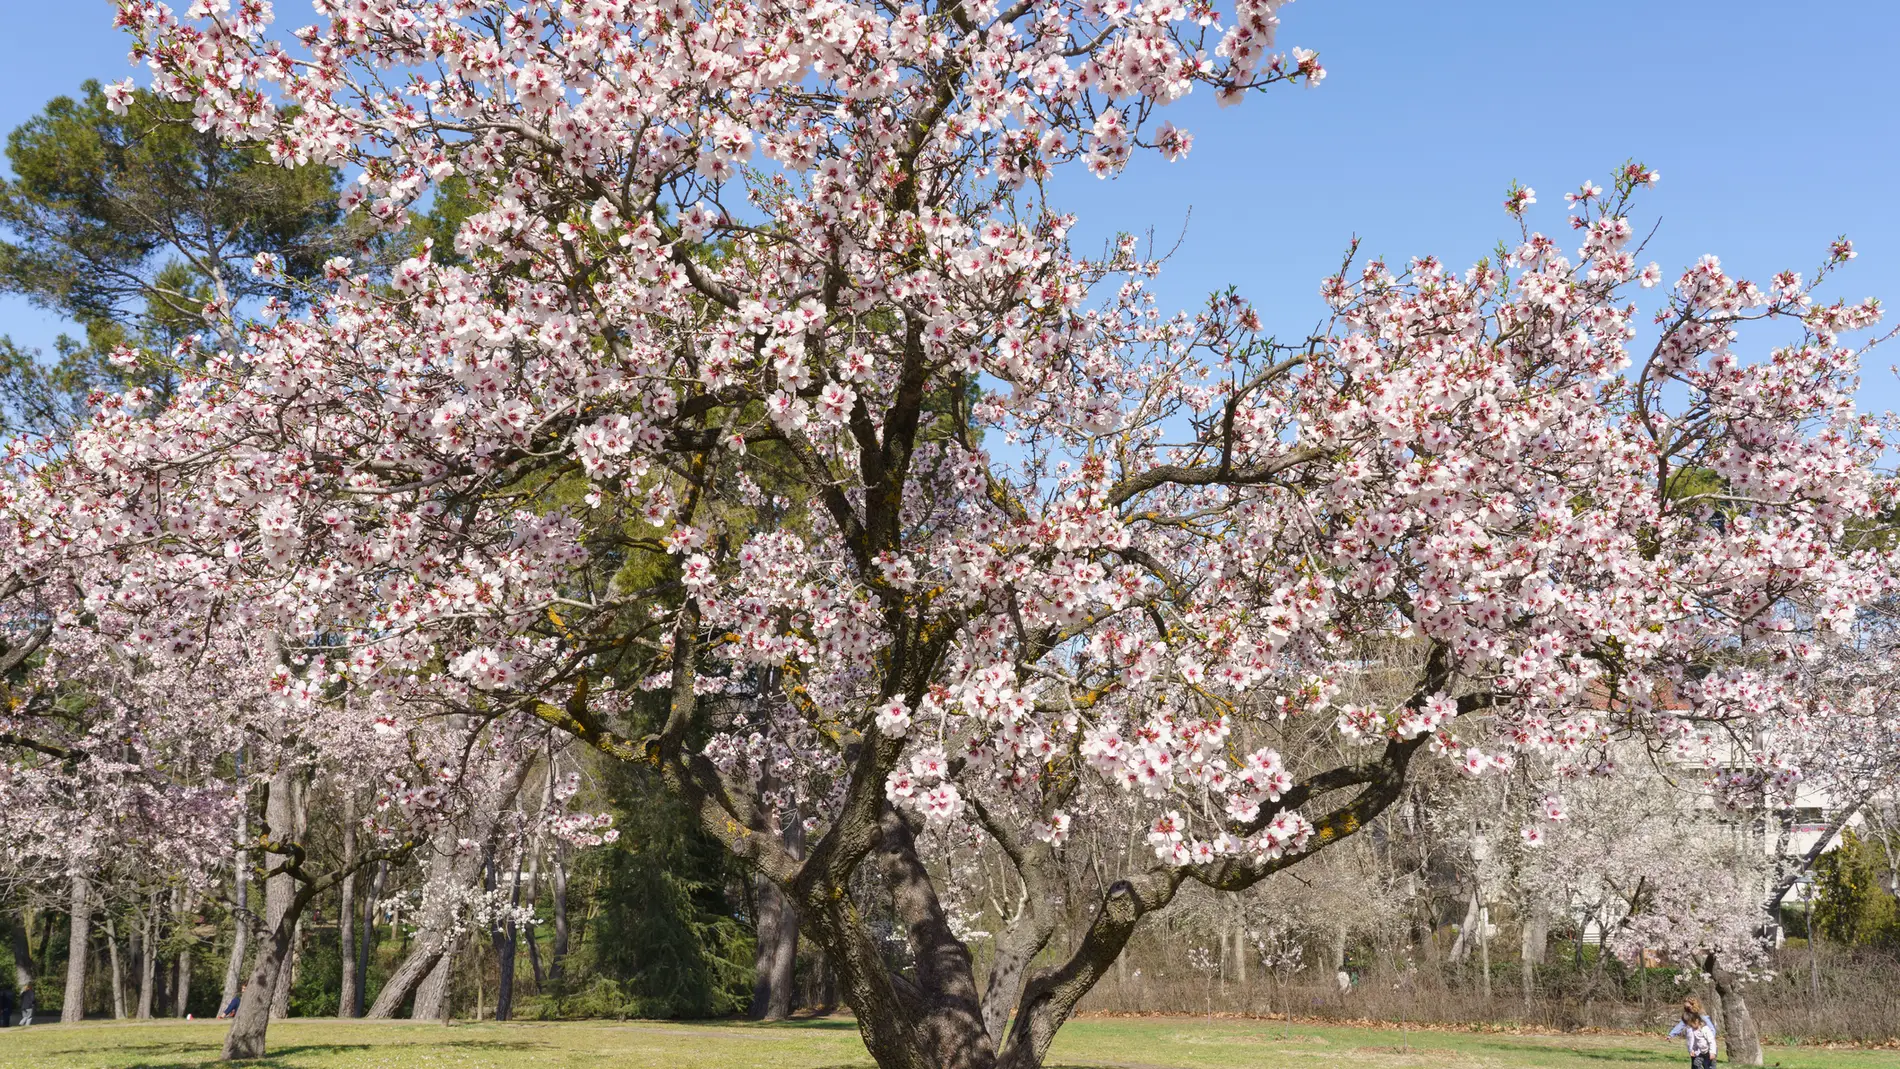 La Quinta de los Molinos de Madrid celebra los almendros en flor con un  bonito espectáculo